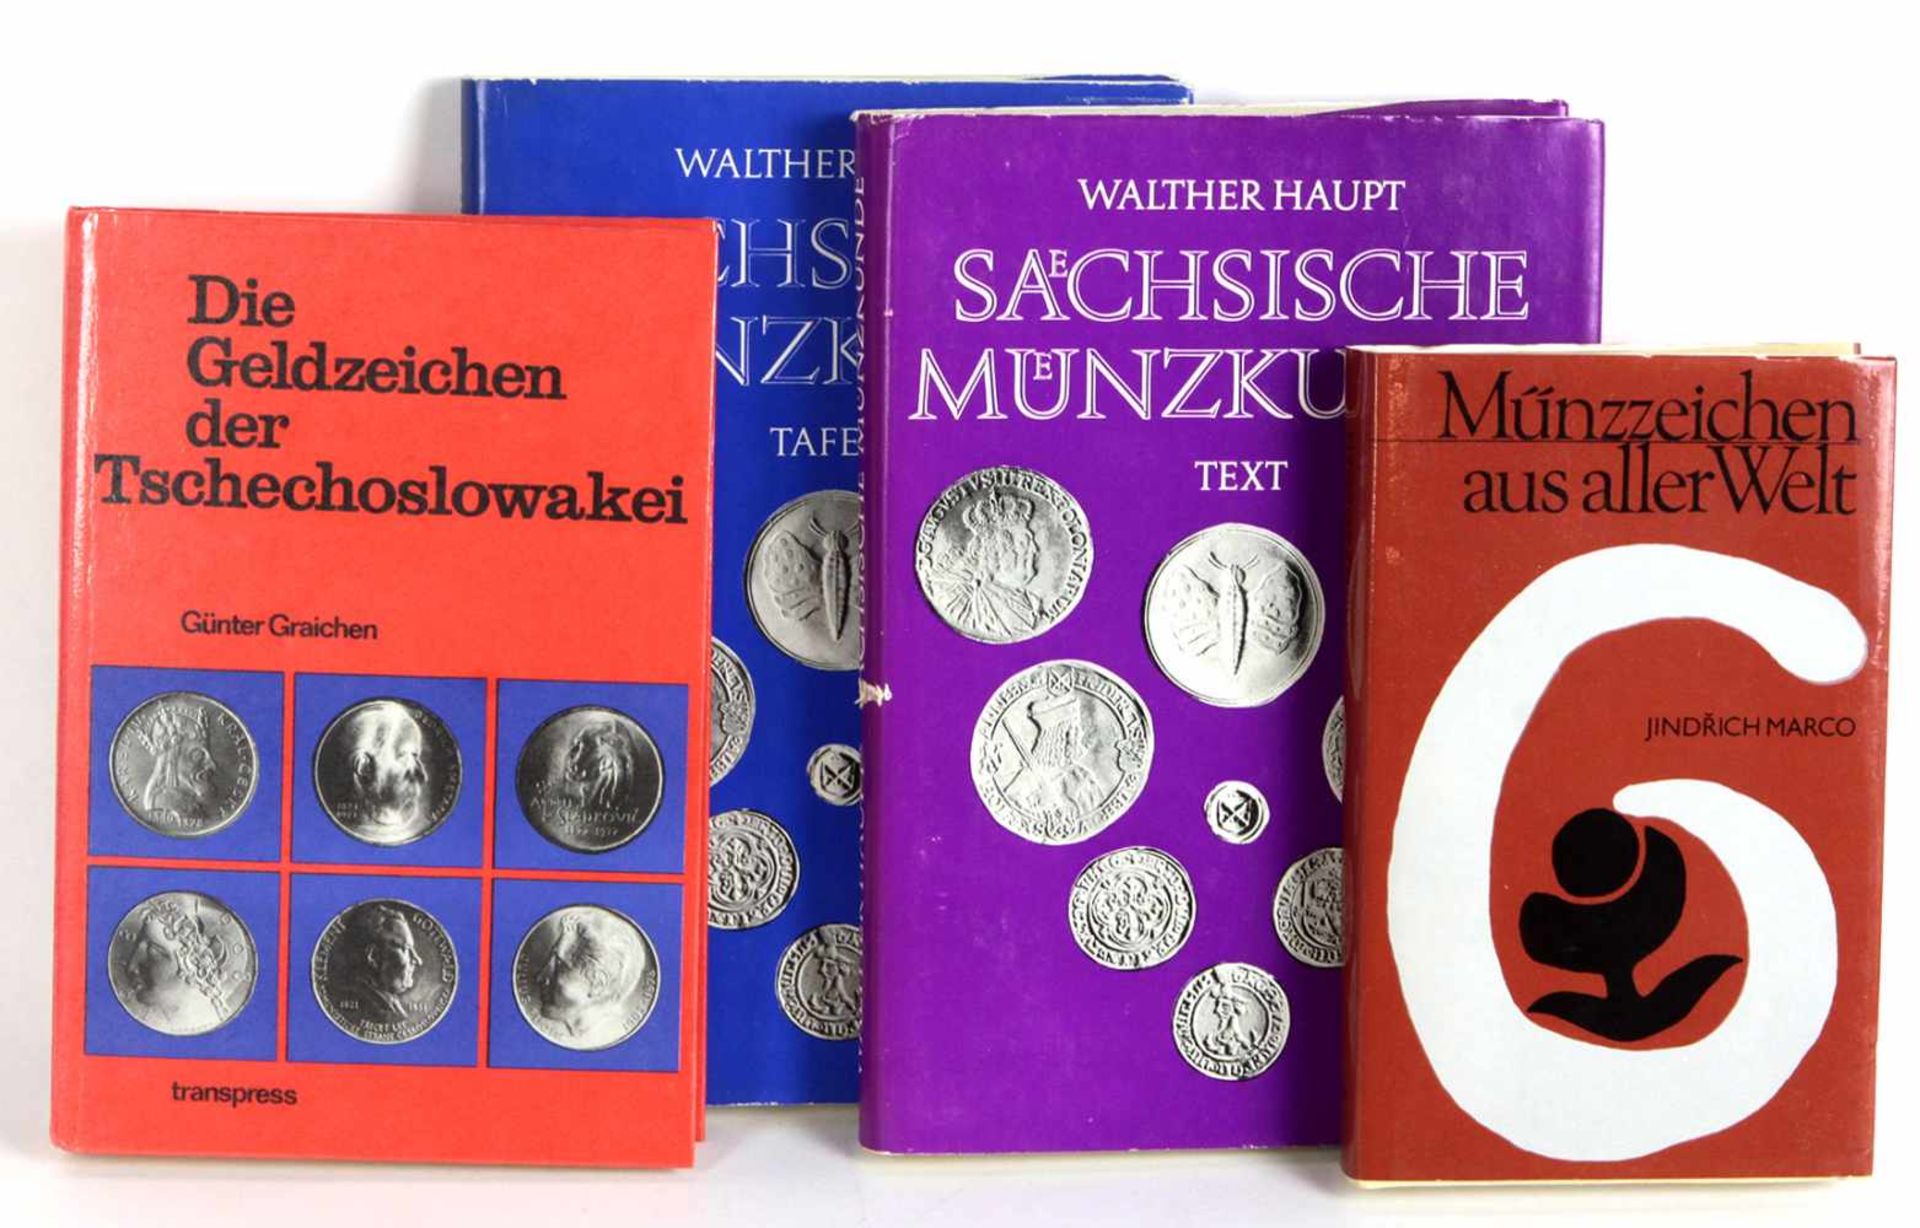 4 Münzbücherdabei *Sächsissche Münzkunde* von Walther Haupt, in 2 Bänden, Textband mit 300 S. mit